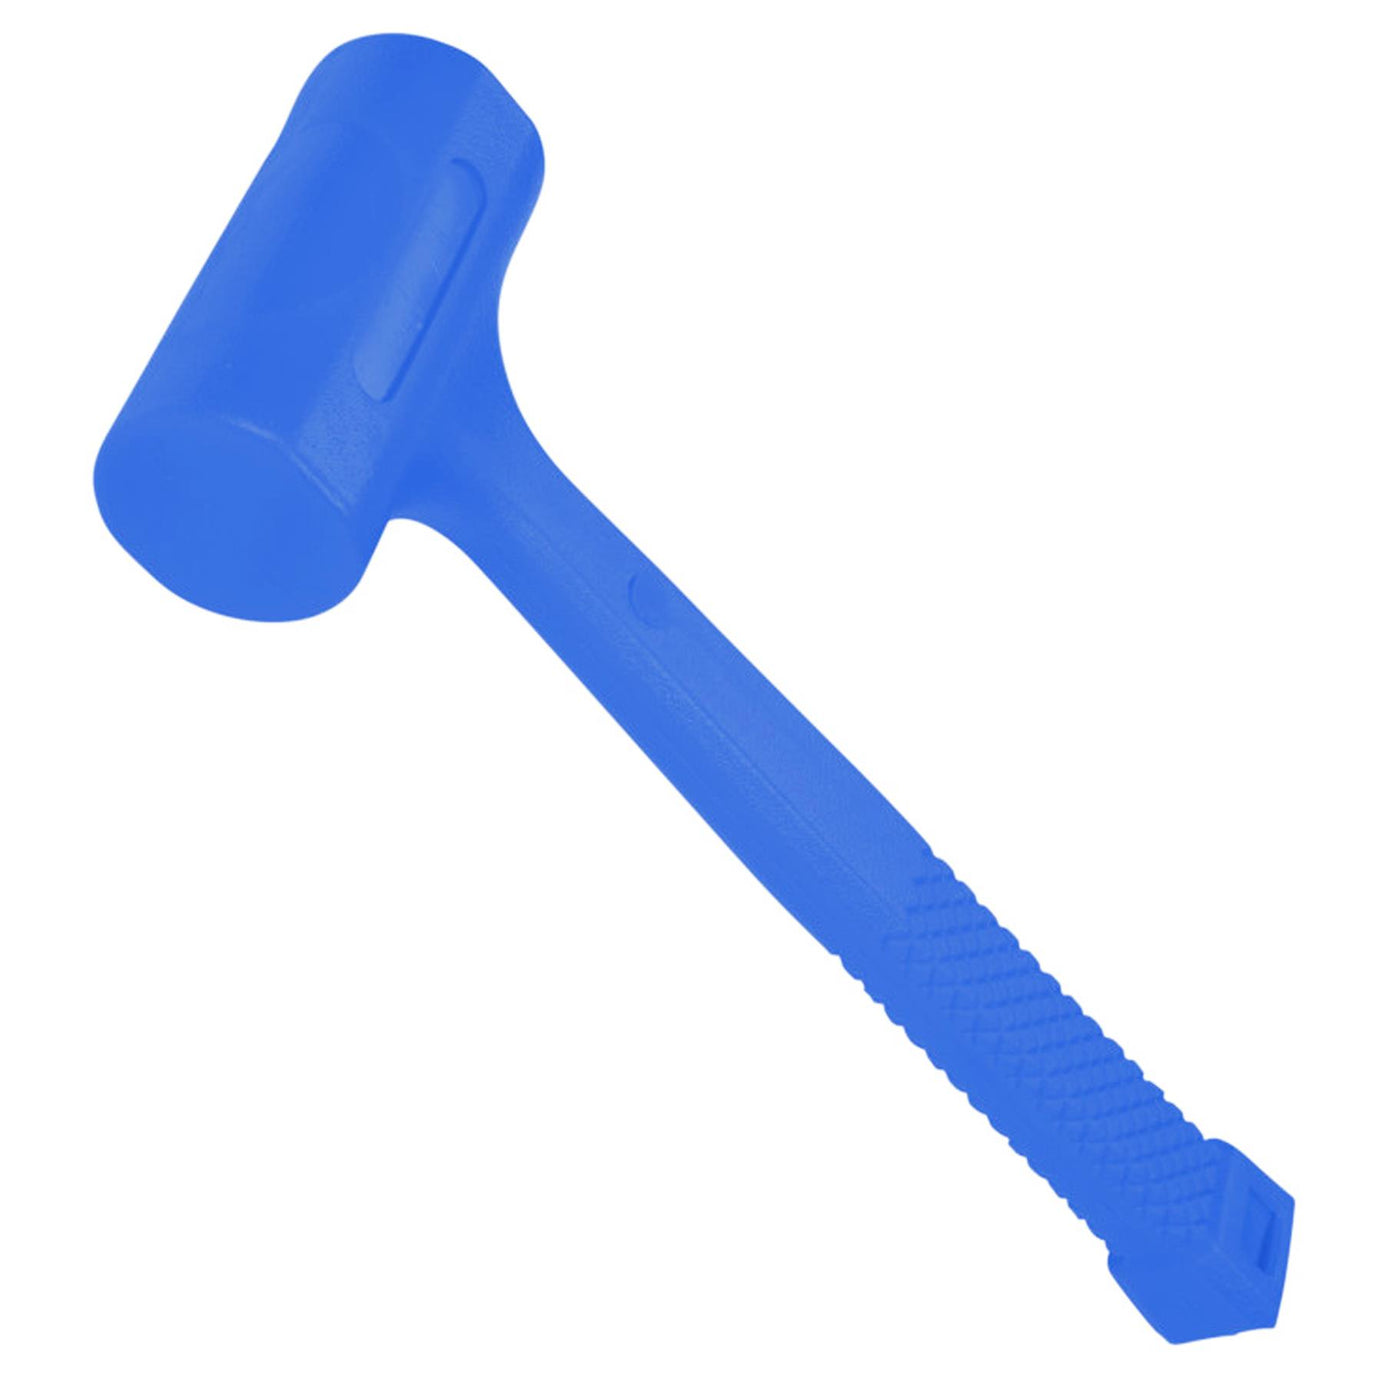 BlueSpot Dead Blow Hammer Rubber Head Mallet Garage Mechanics 720g 1.58LB